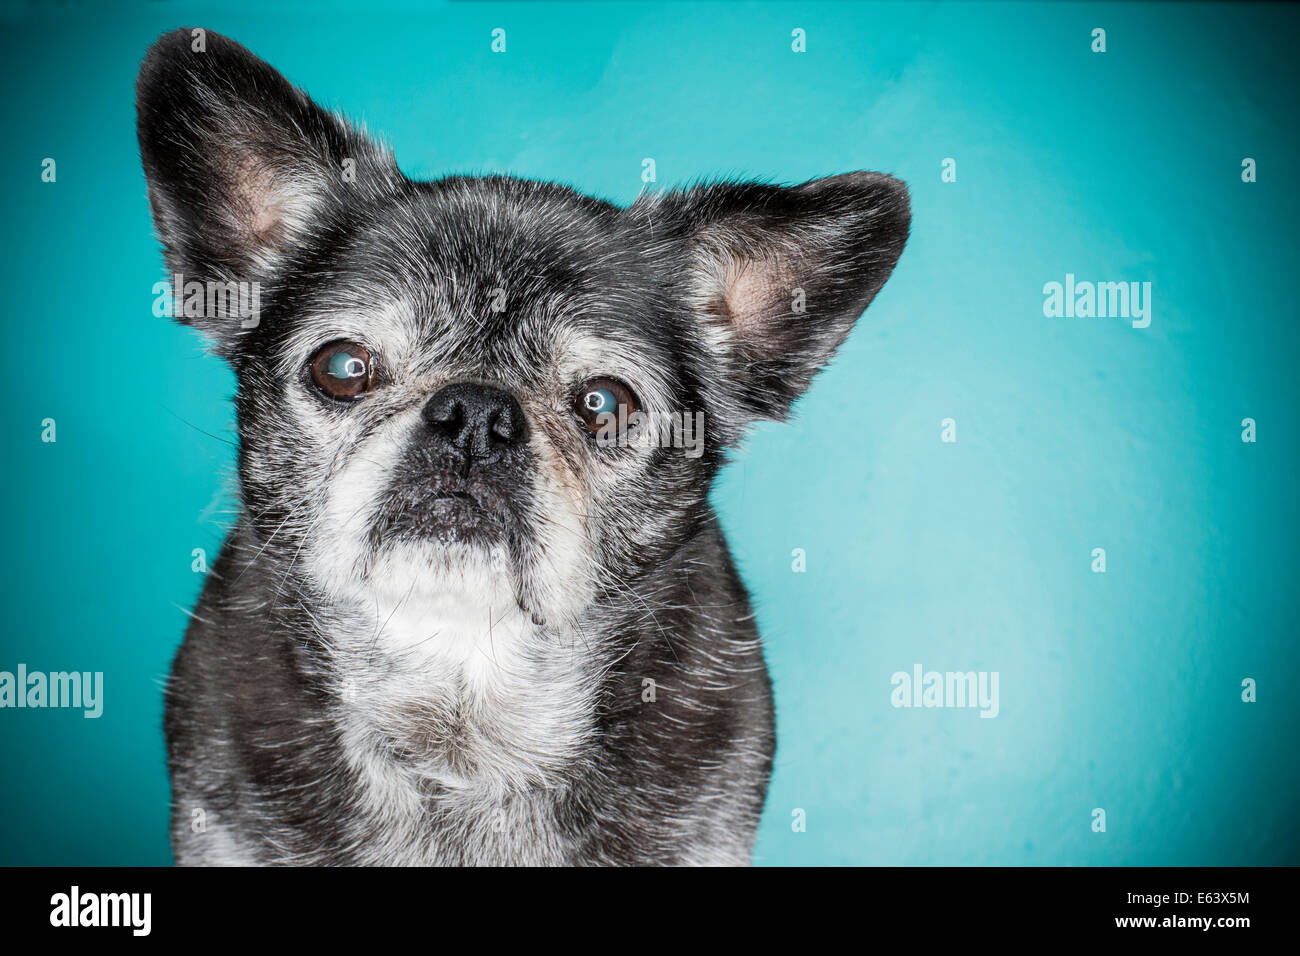 Eine alte graue Haare Hund, Mops Hund, mit einem Ring Flash-Stroboskop vor einem blauen Hintergrund beleuchtet Stockfoto